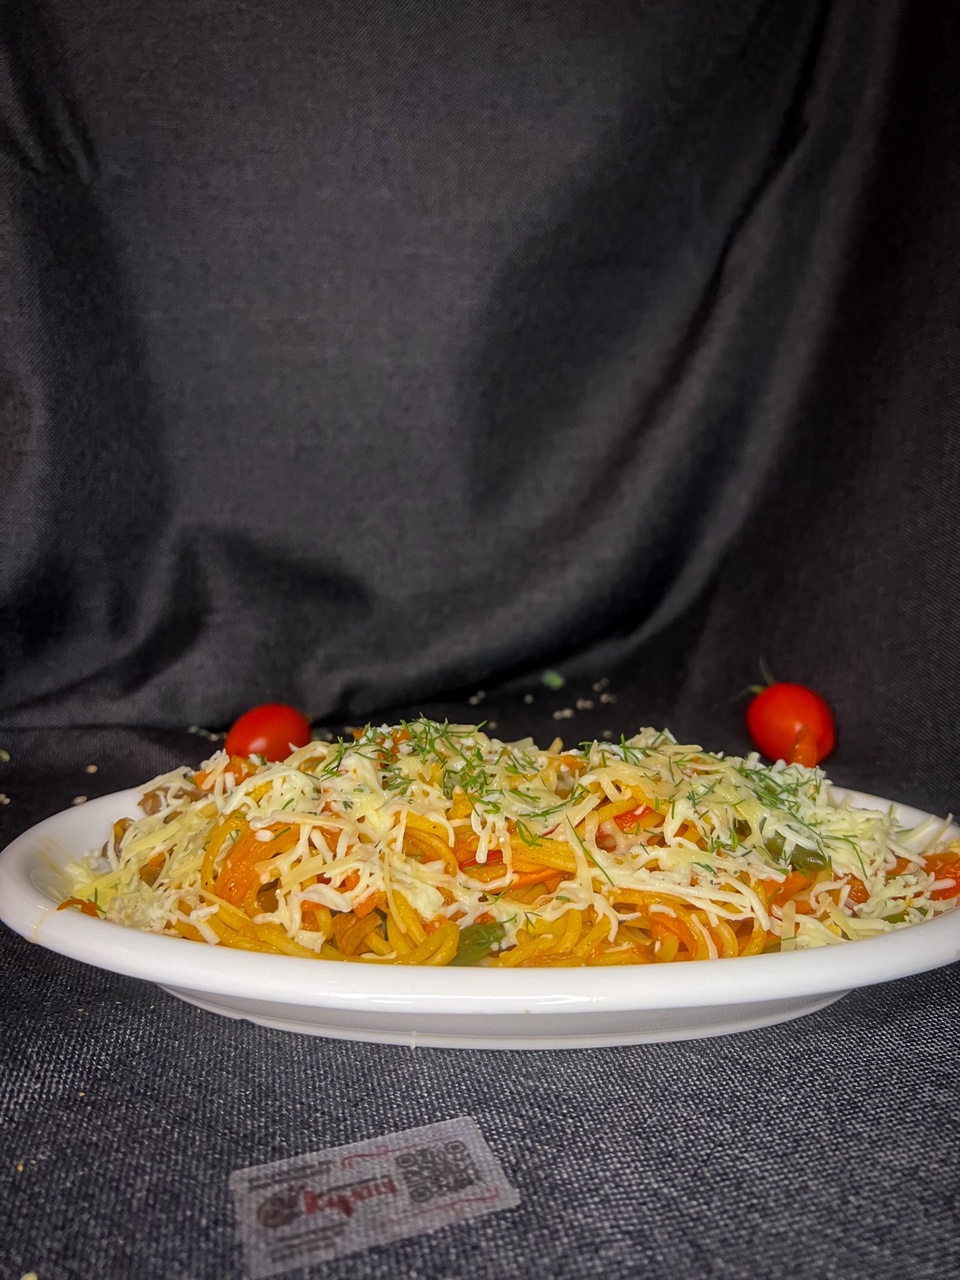 Спагетти с говядиной в соусе «Балоньез» - 290 ₽, заказать онлайн.